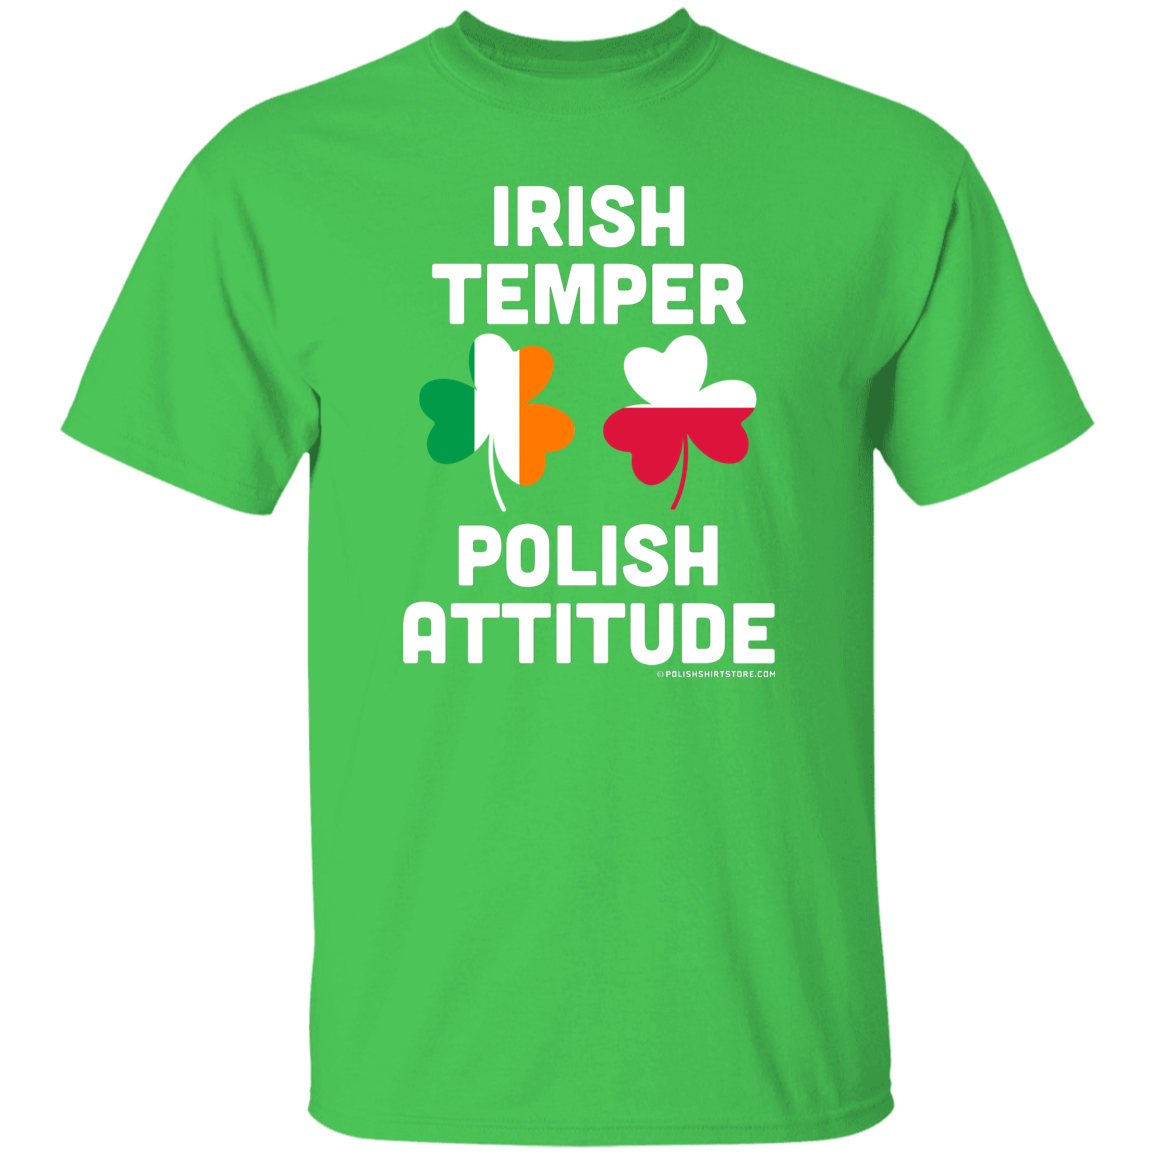 Irish Temper Polish Attitude Apparel CustomCat G500 5.3 oz. T-Shirt Electric Green S